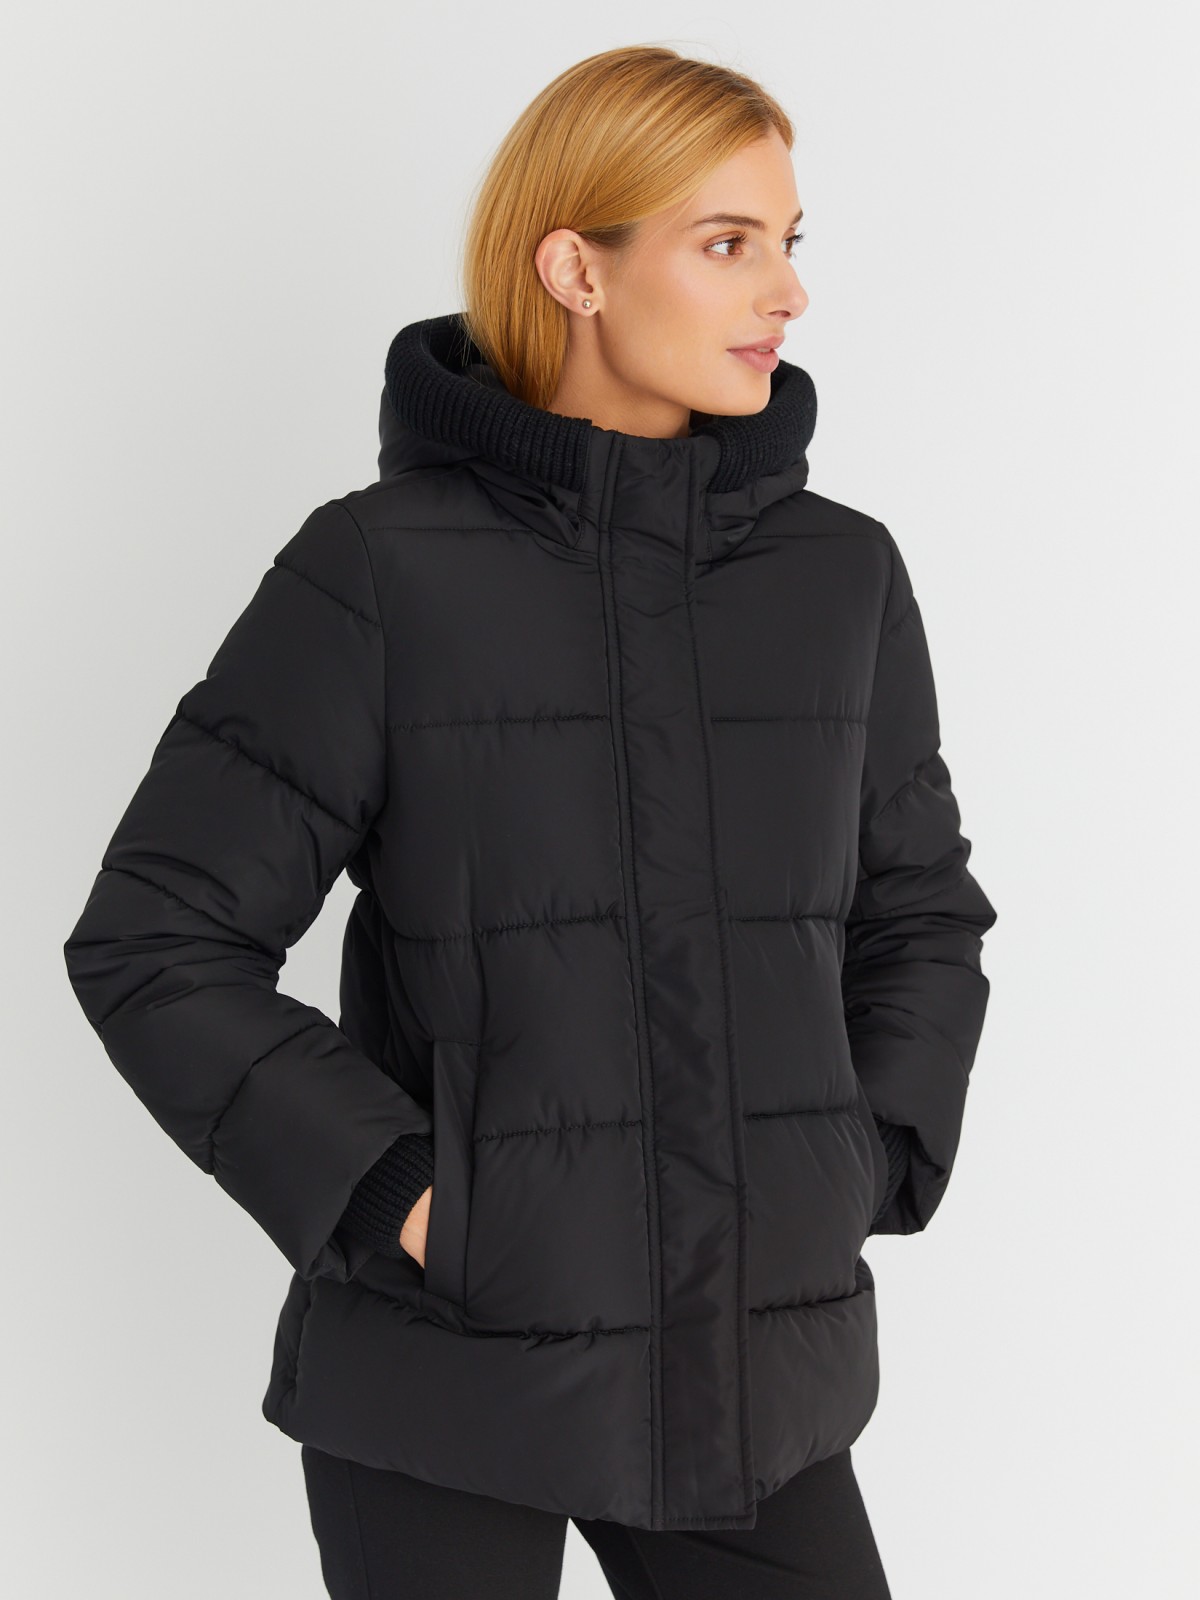 Тёплая стёганая куртка с капюшоном и внутренними манжетами-риб zolla 023345102064, цвет черный, размер S - фото 4